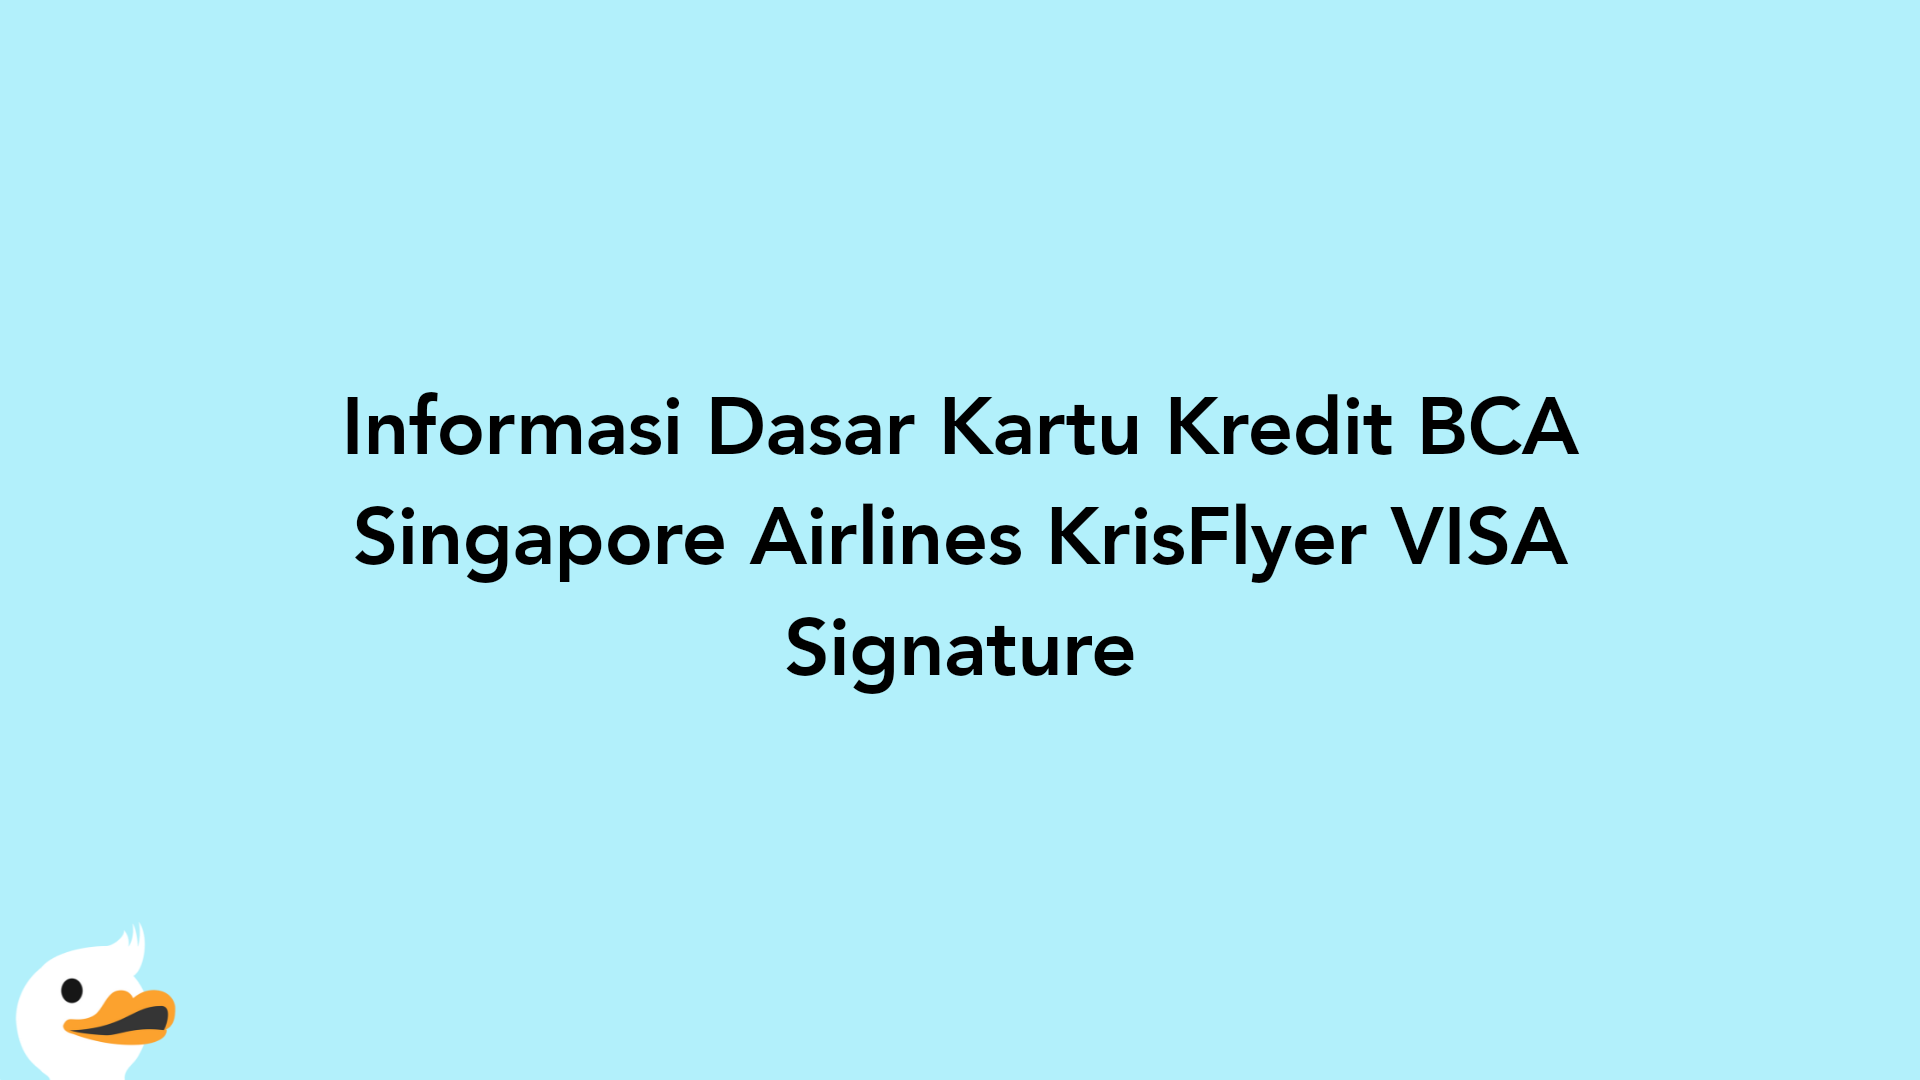 Informasi Dasar Kartu Kredit BCA Singapore Airlines KrisFlyer VISA Signature